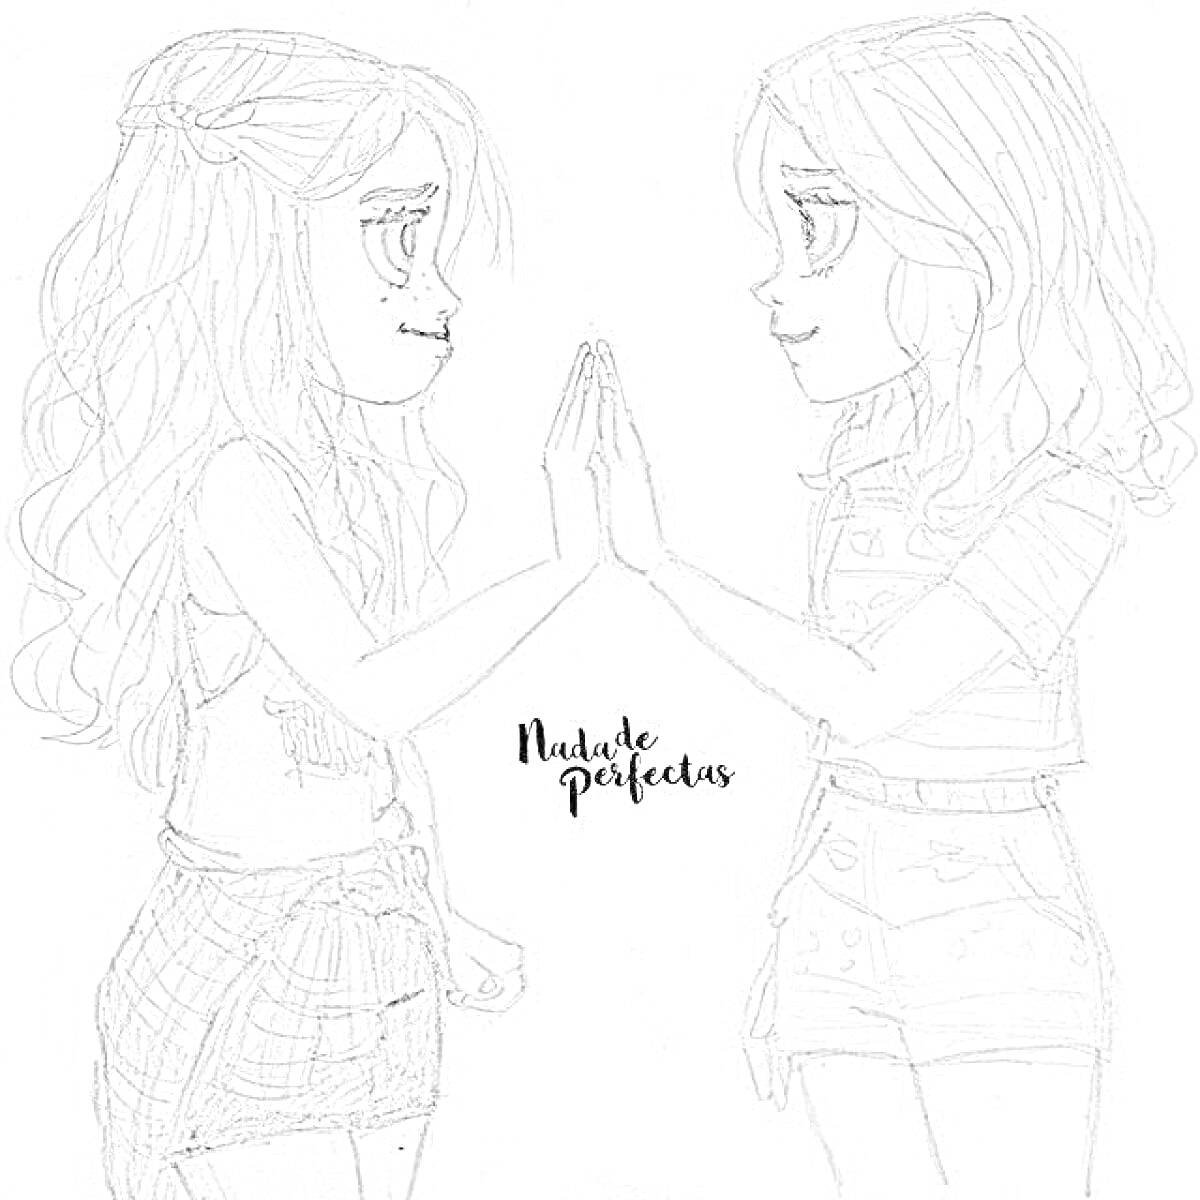 Раскраска Две девочки с длинными волосами, стоящие напротив друг друга и касающиеся ладоней, одна в юбке и майке, другая в шортах и рубашке.